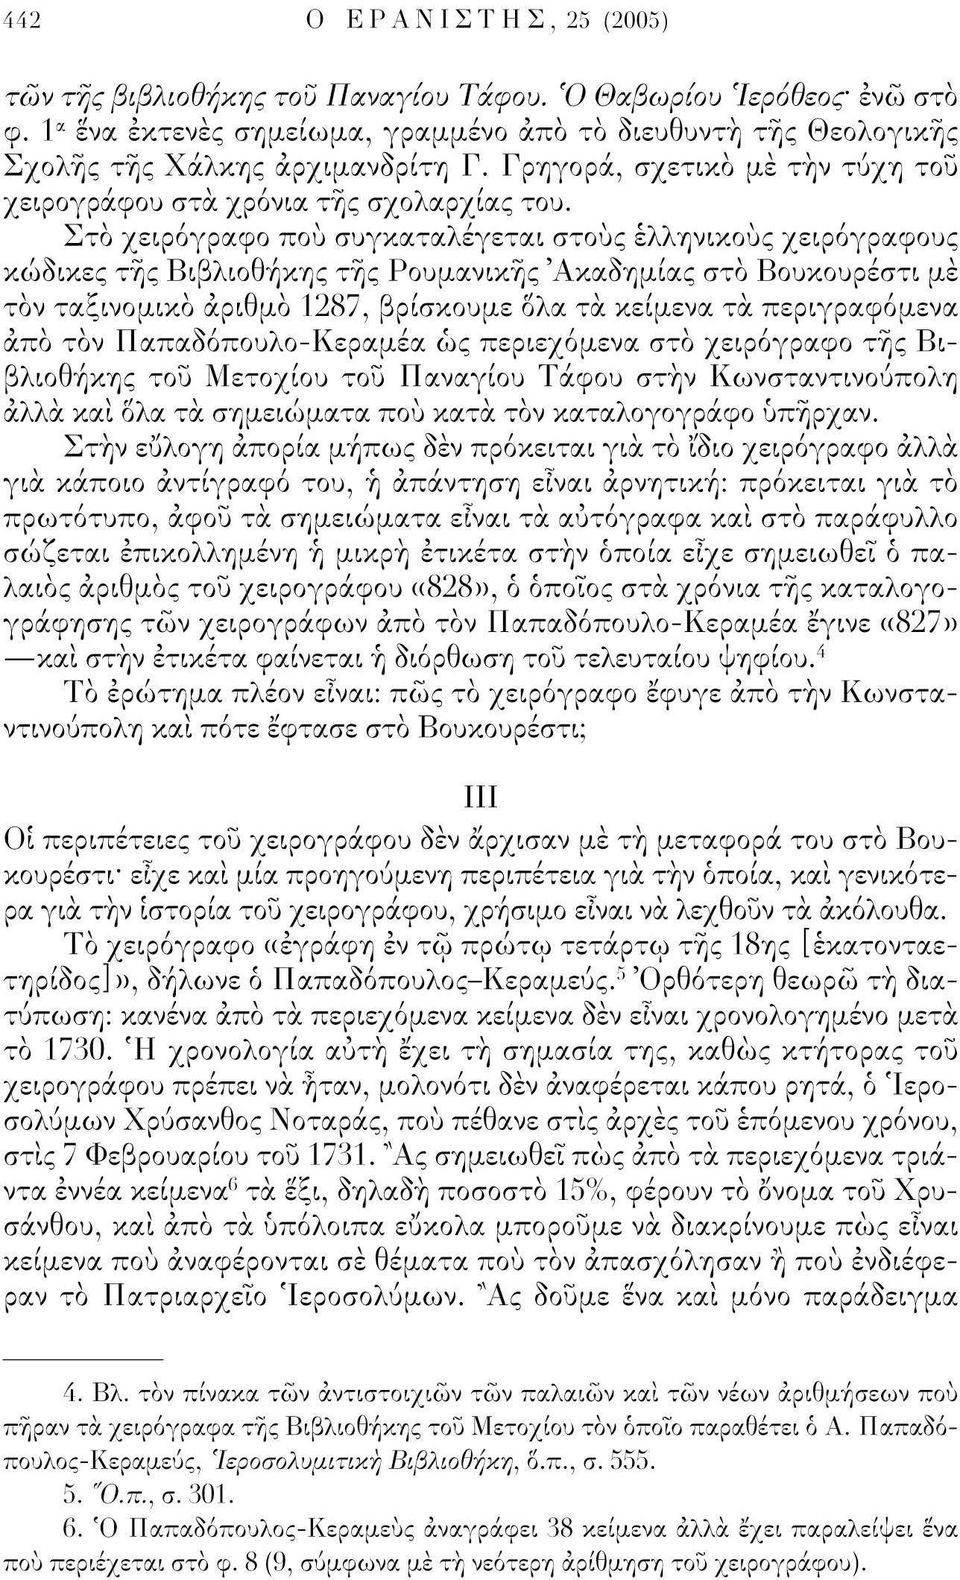 Στο χειρόγραφο πού συγκαταλέγεται στους ελληνικούς χειρόγραφους κώδικες τής Βιβλιοθήκης τής Ρουμανικής 'Ακαδημίας στο Βουκουρέστι μέ τον ταξινομικό αριθμό 1287, βρίσκουμε όλα τα κείμενα τα